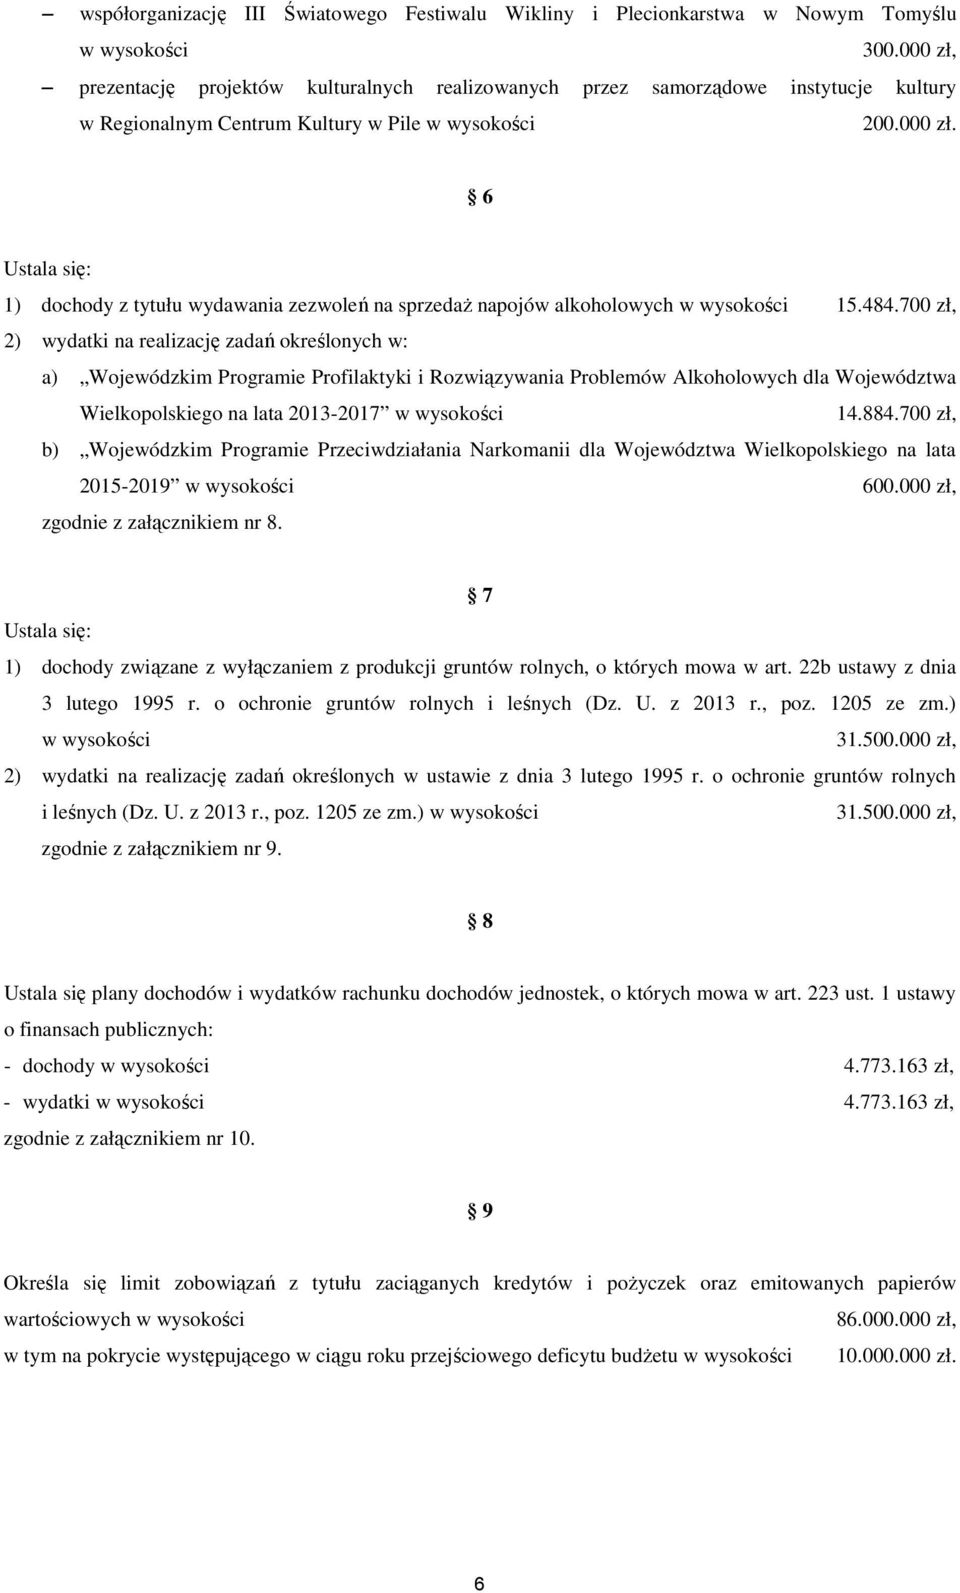 484.700 zł, 2) wydatki na realizację zadań określonych w: a) Wojewódzkim Programie Profilaktyki i Rozwiązywania Problemów Alkoholowych dla Województwa Wielkopolskiego na lata 2013-2017 w wysokości 14.